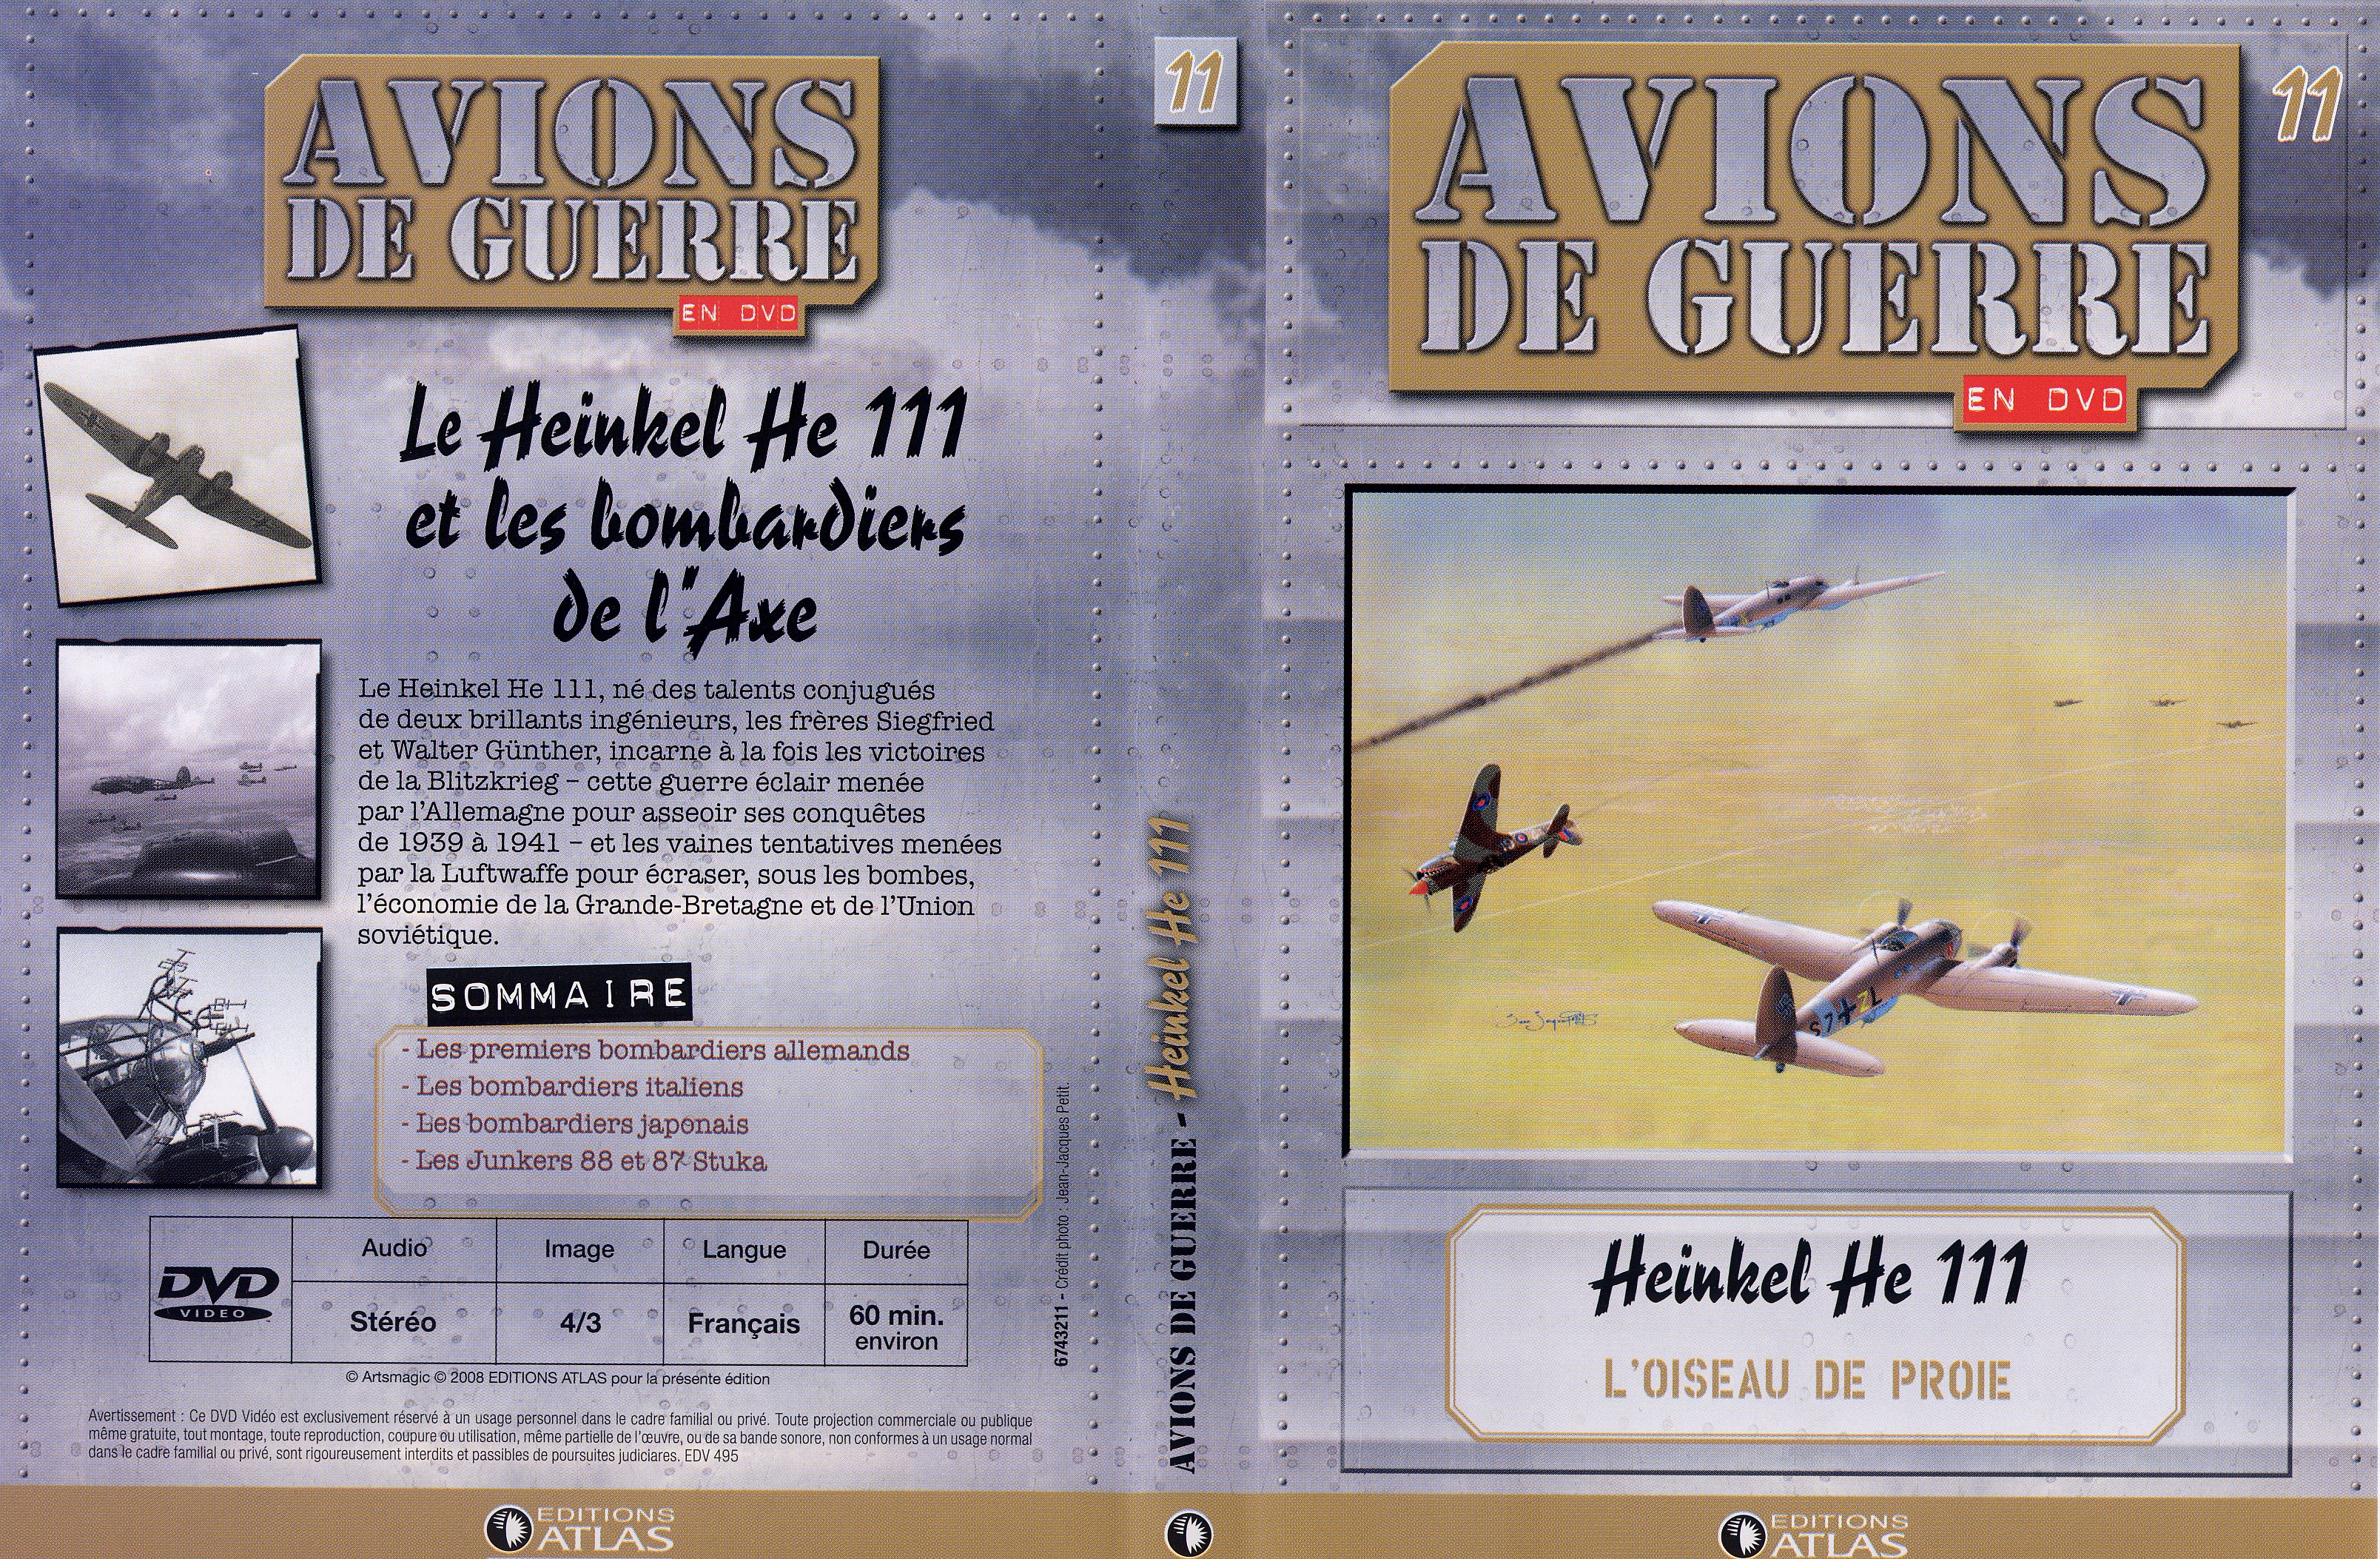 Jaquette DVD Avions de guerre en DVD vol 11